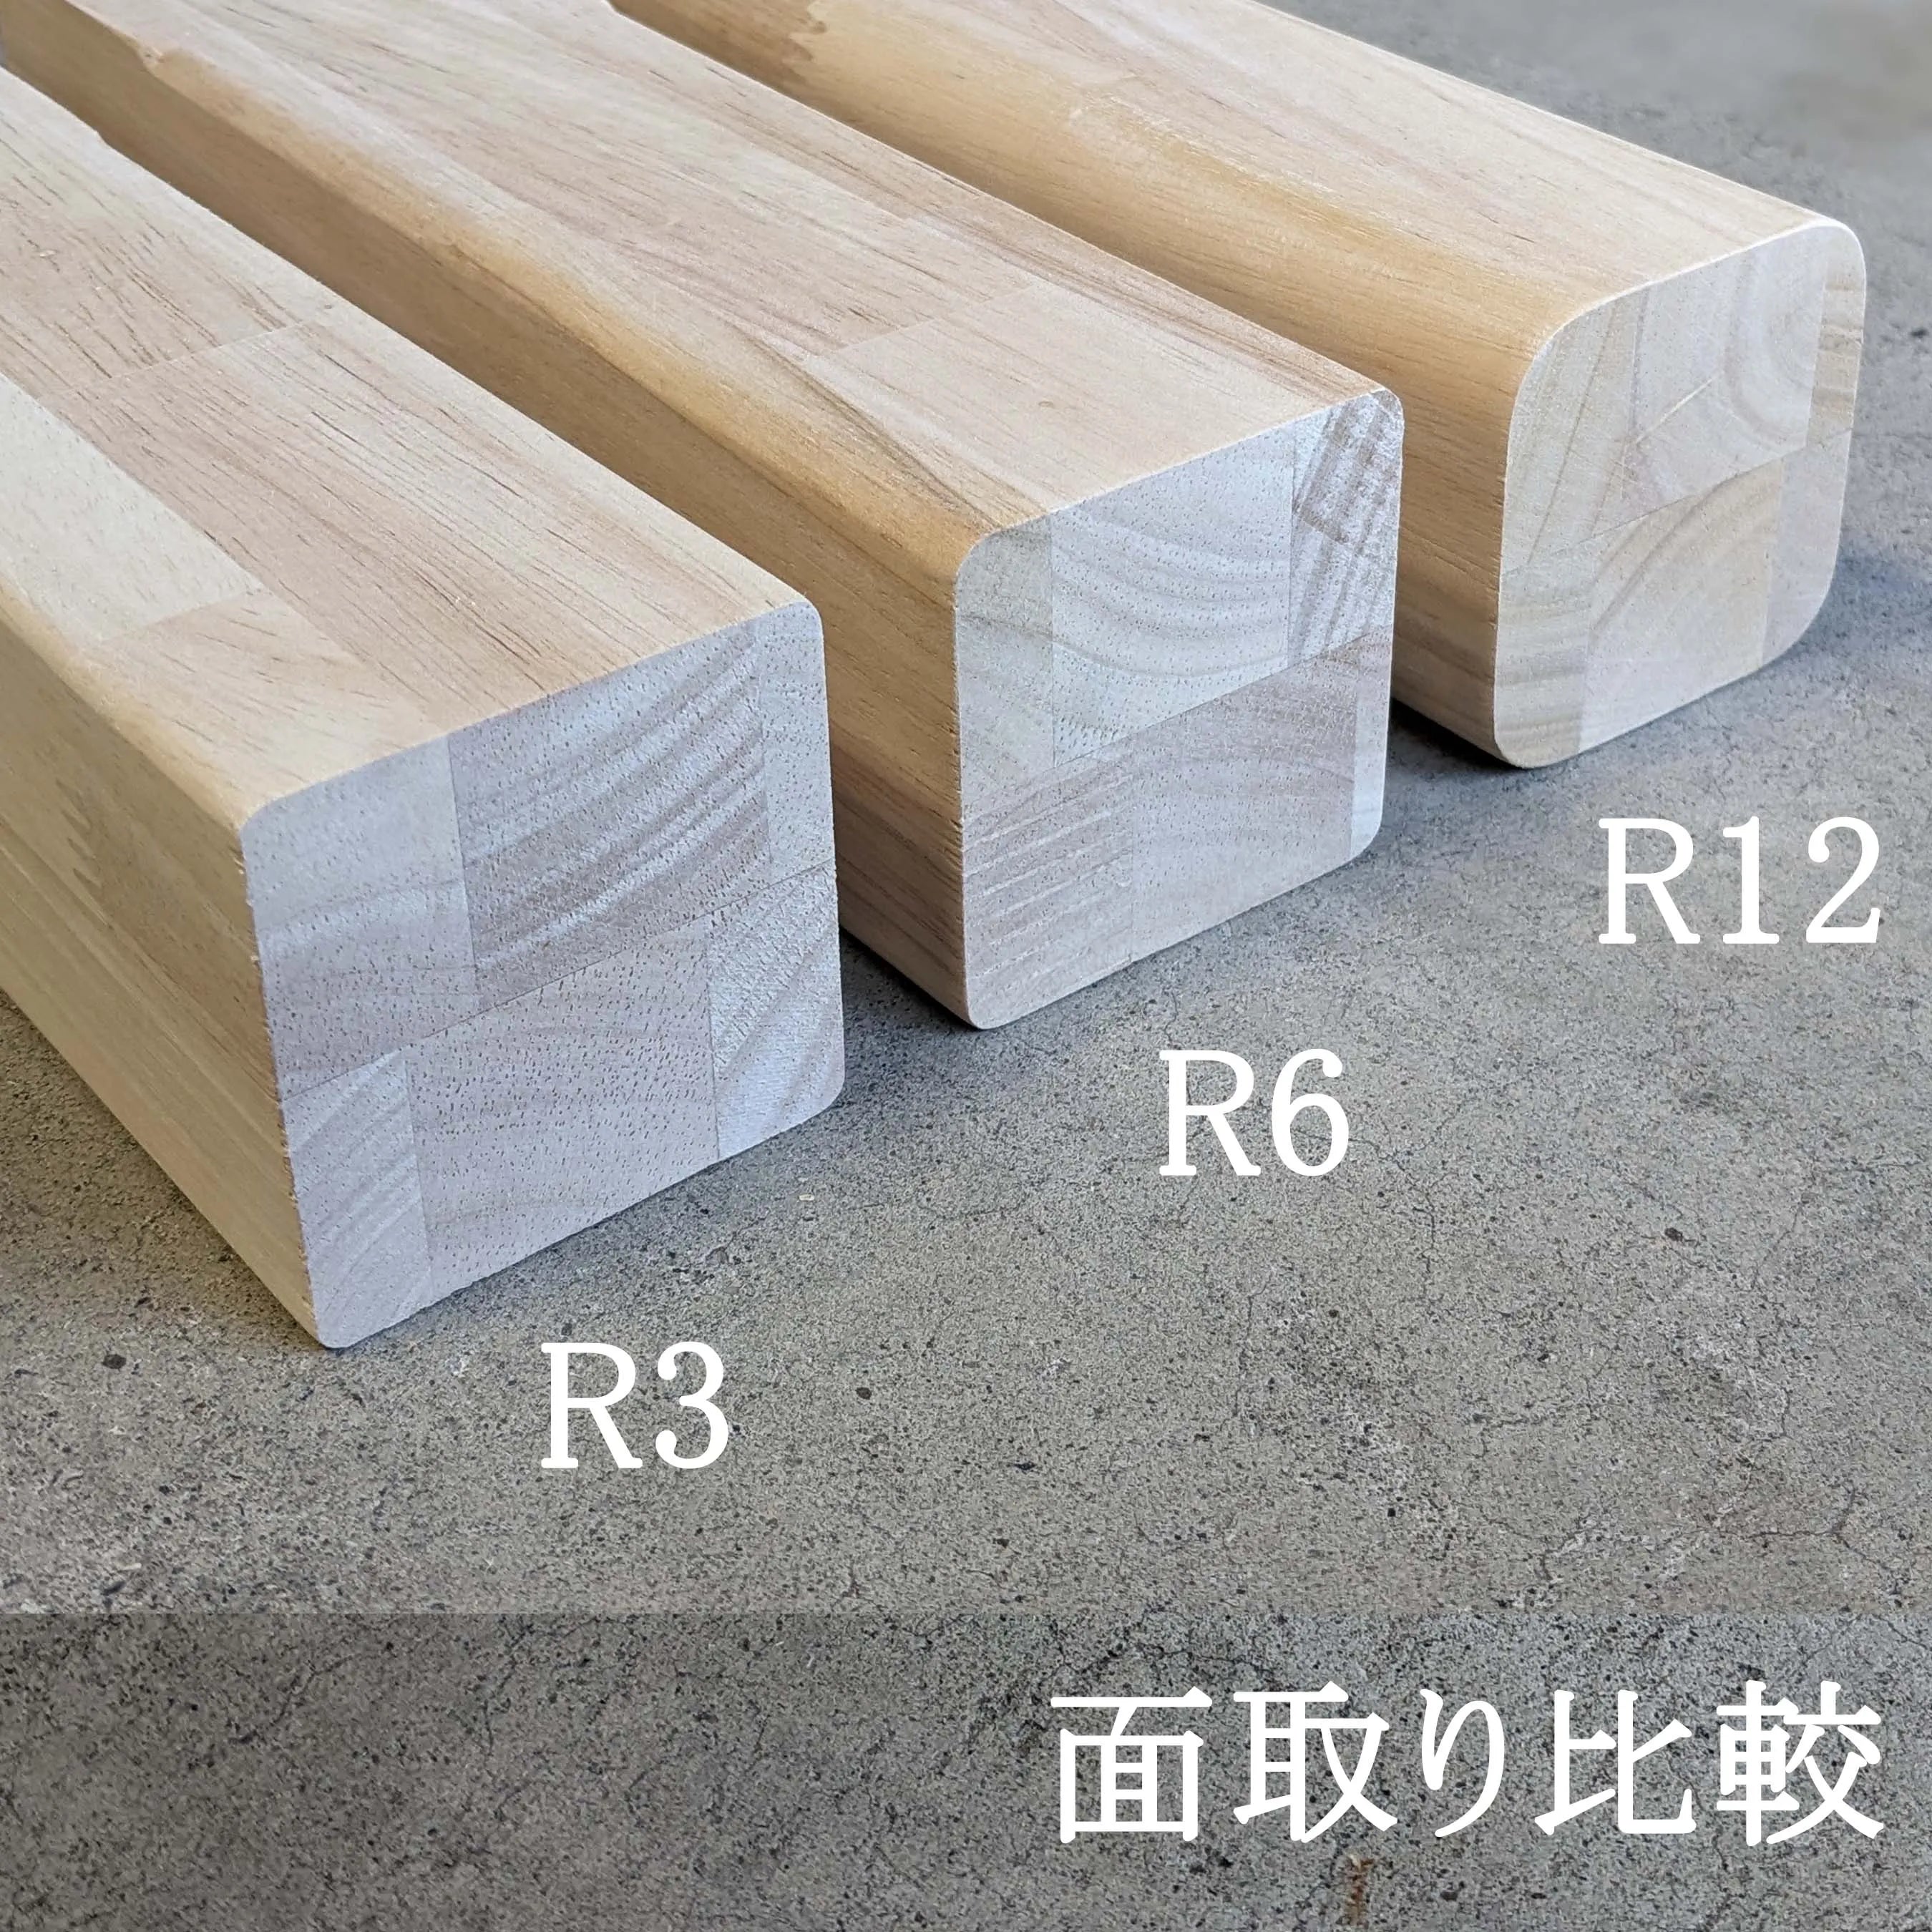 木製 テーブル / デスク  ゴム材 口型